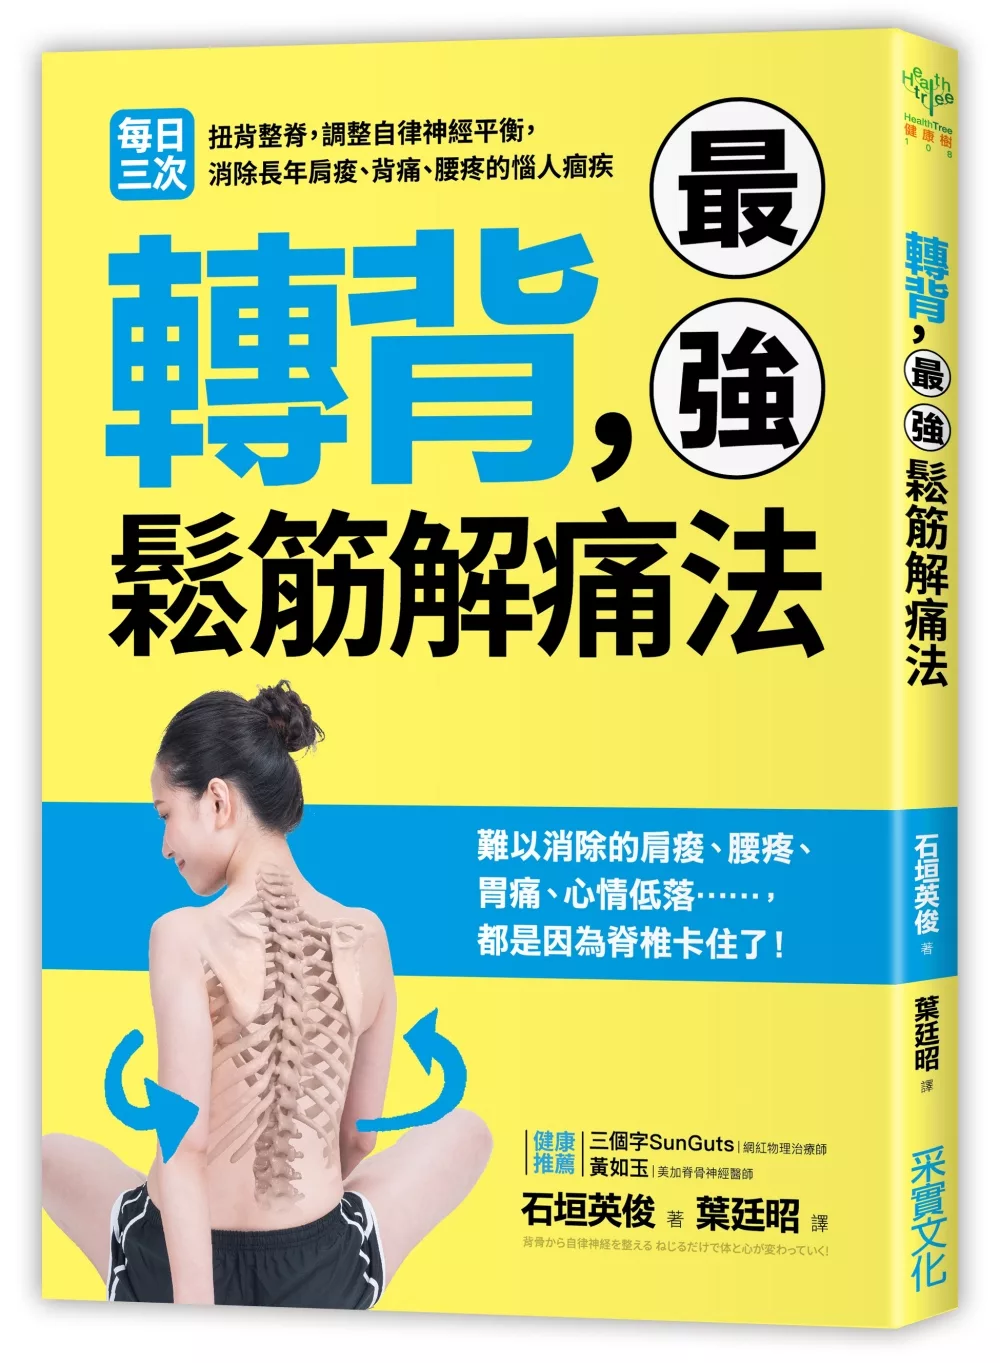 轉背，最強鬆筋解痛法：每日三次扭背整脊，調整自律神經平衡，消除長年肩痠、背痛、腰疼的惱人痼疾